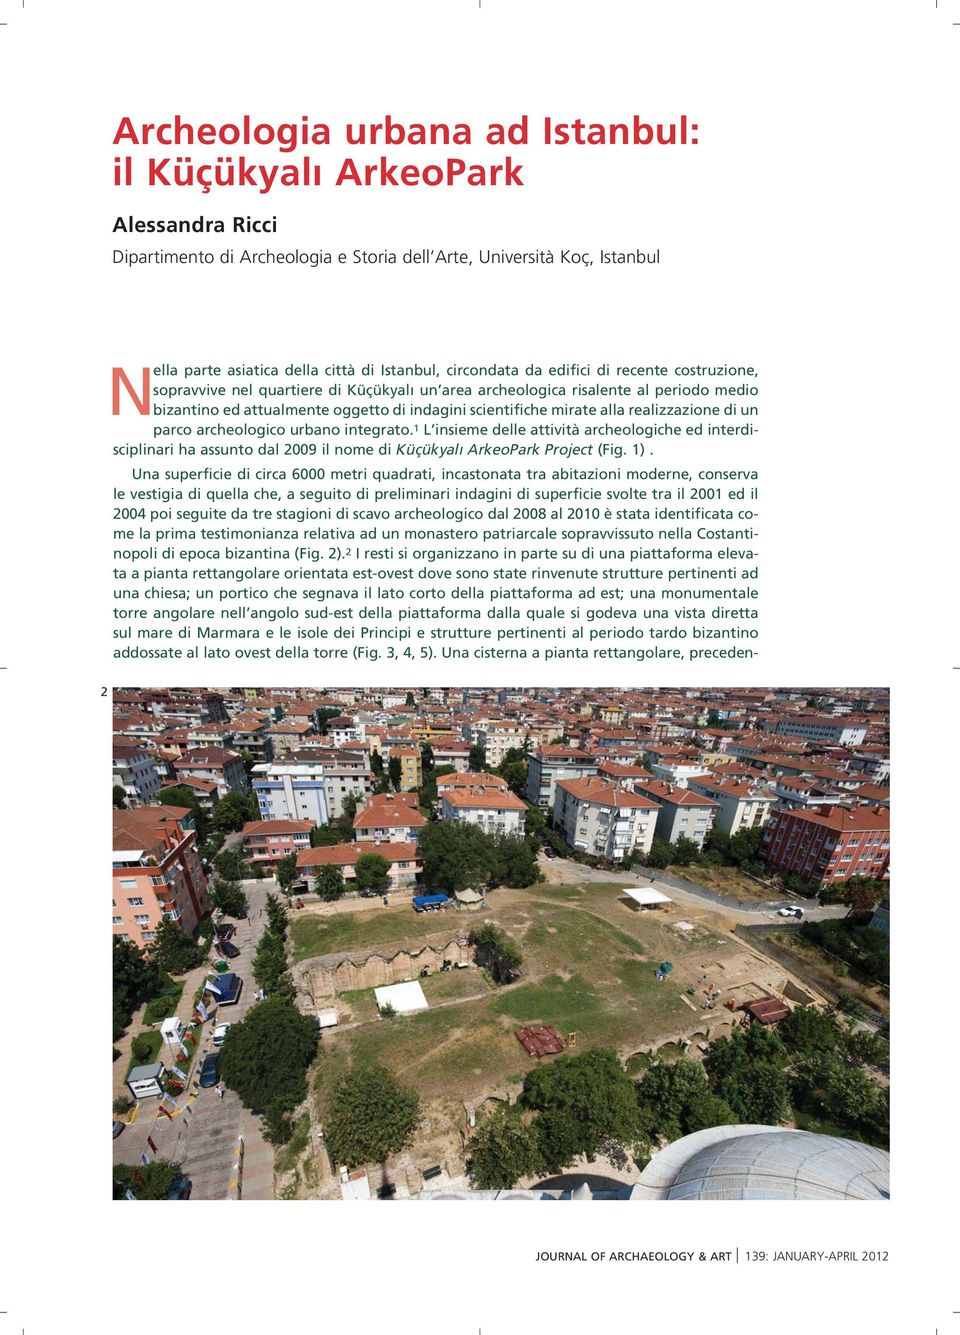 alla realizzazione di un parco archeologico urbano integrato. 1 L insieme delle attività archeologiche ed interdisciplinari ha assunto dal 2009 il nome di Küçükyal ArkeoPark Project (Fig. 1).